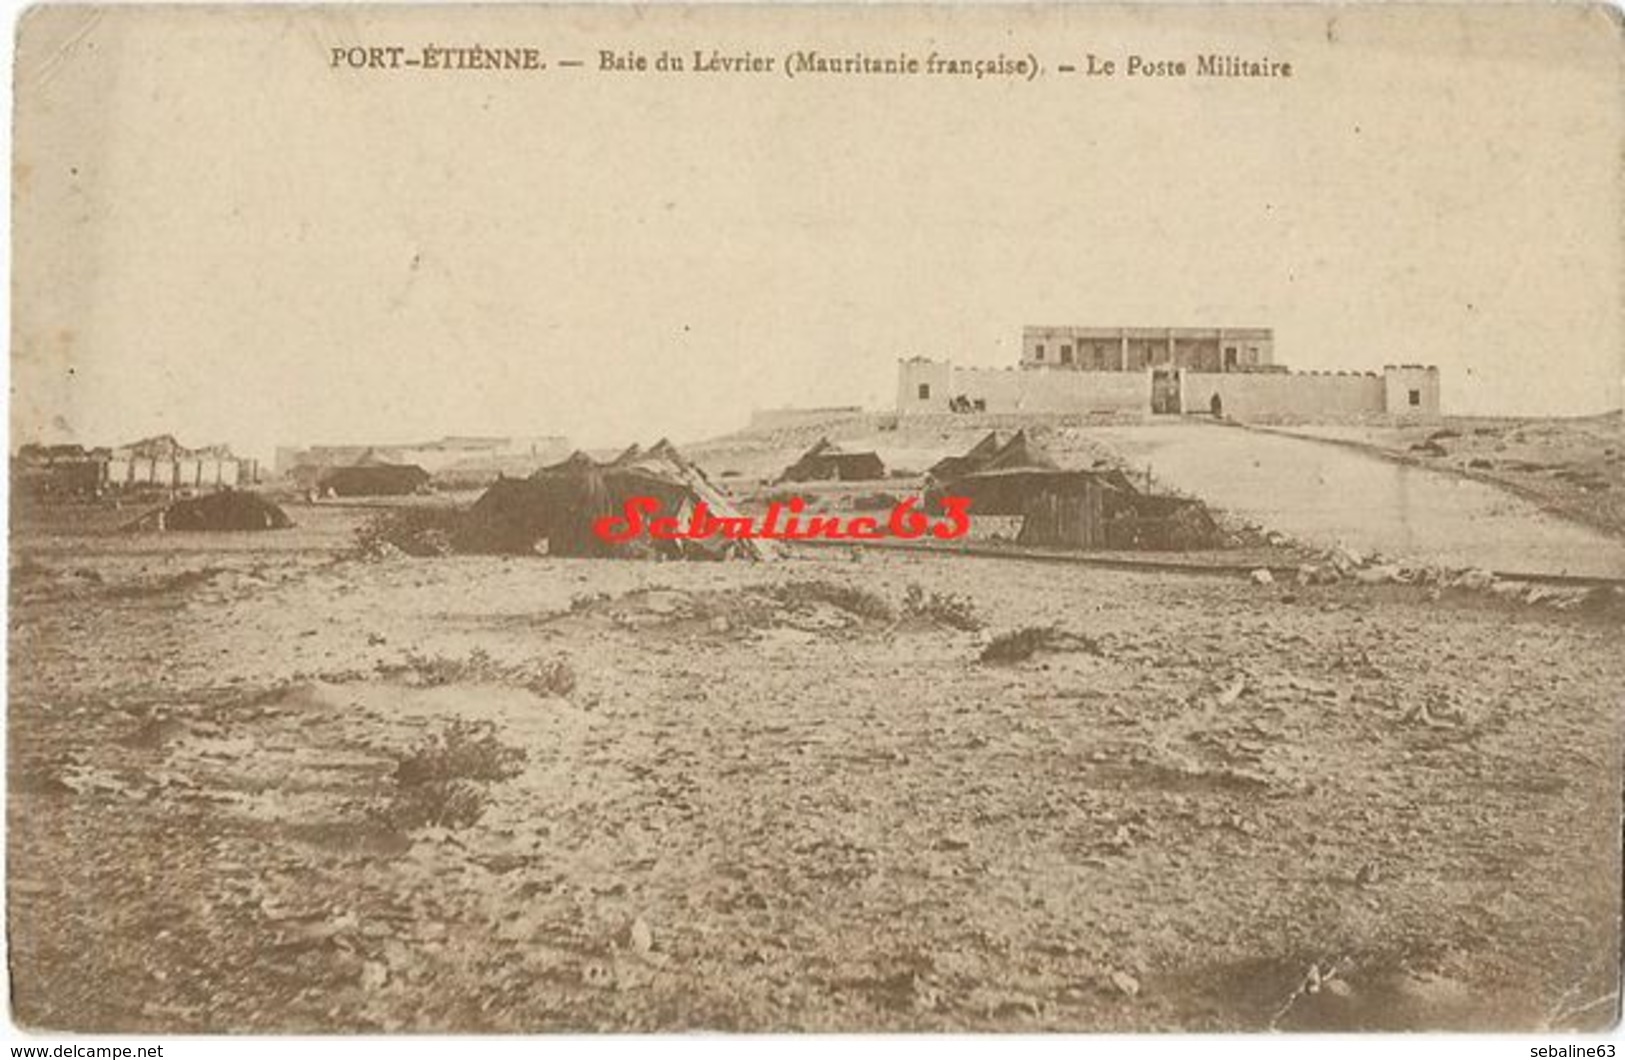 Port-Etienne - Baie Du Lévrier - Le Poste Militaire - Mauretanien